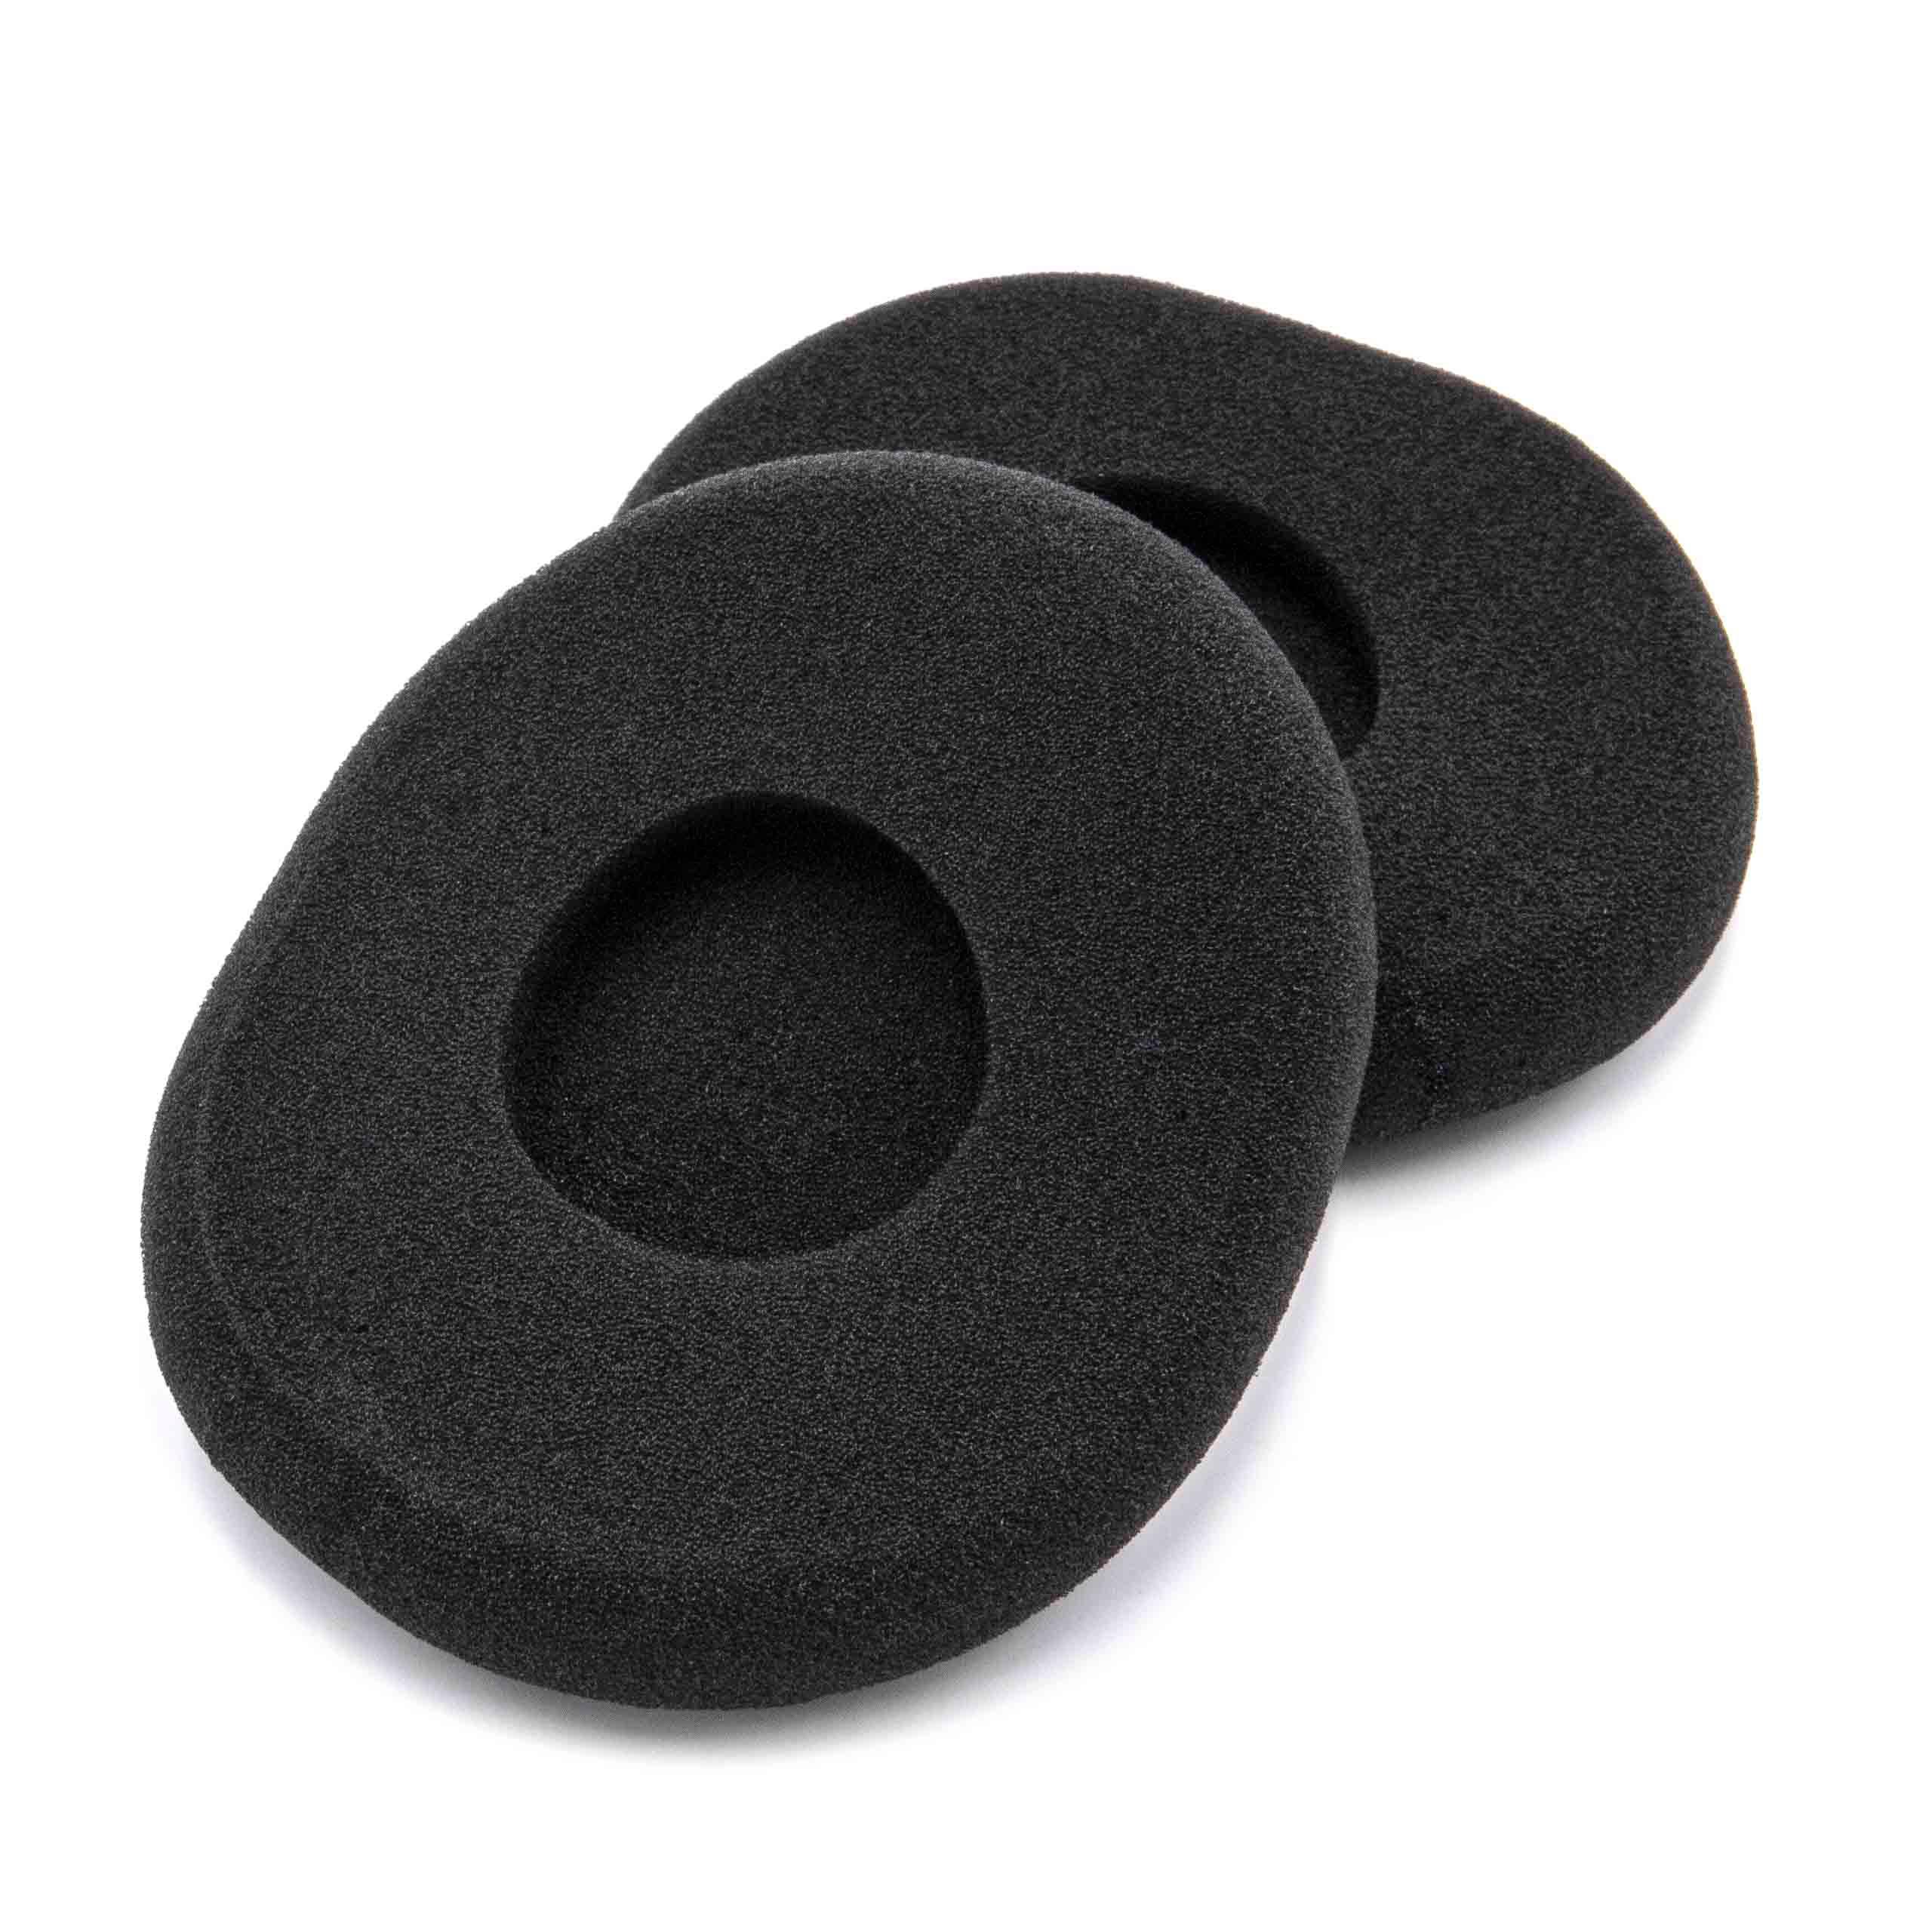 2x Ear Pads suitable for Logitech H800 Headphones etc. - foam